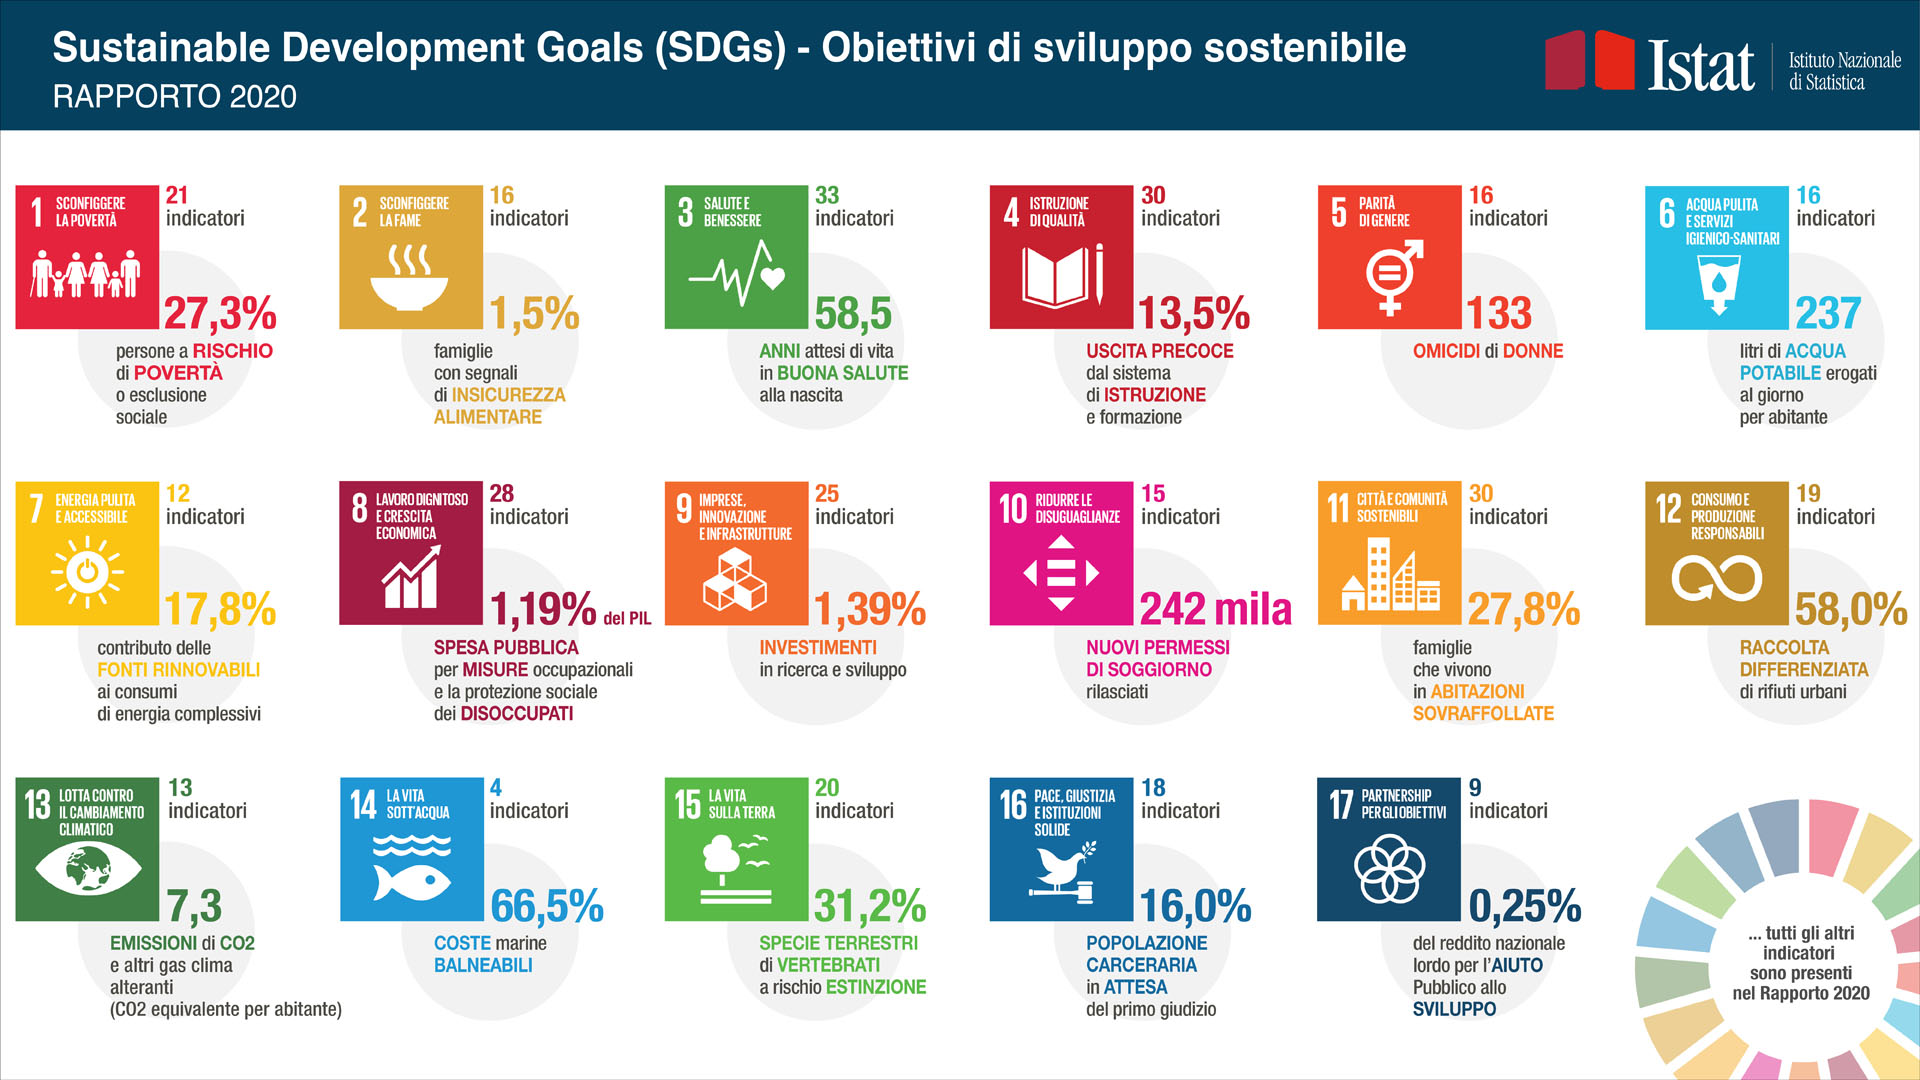 Sustainable Development Goals (SDGs) - Obiettivi di sviluppo sostenibile - Rapporto 2020